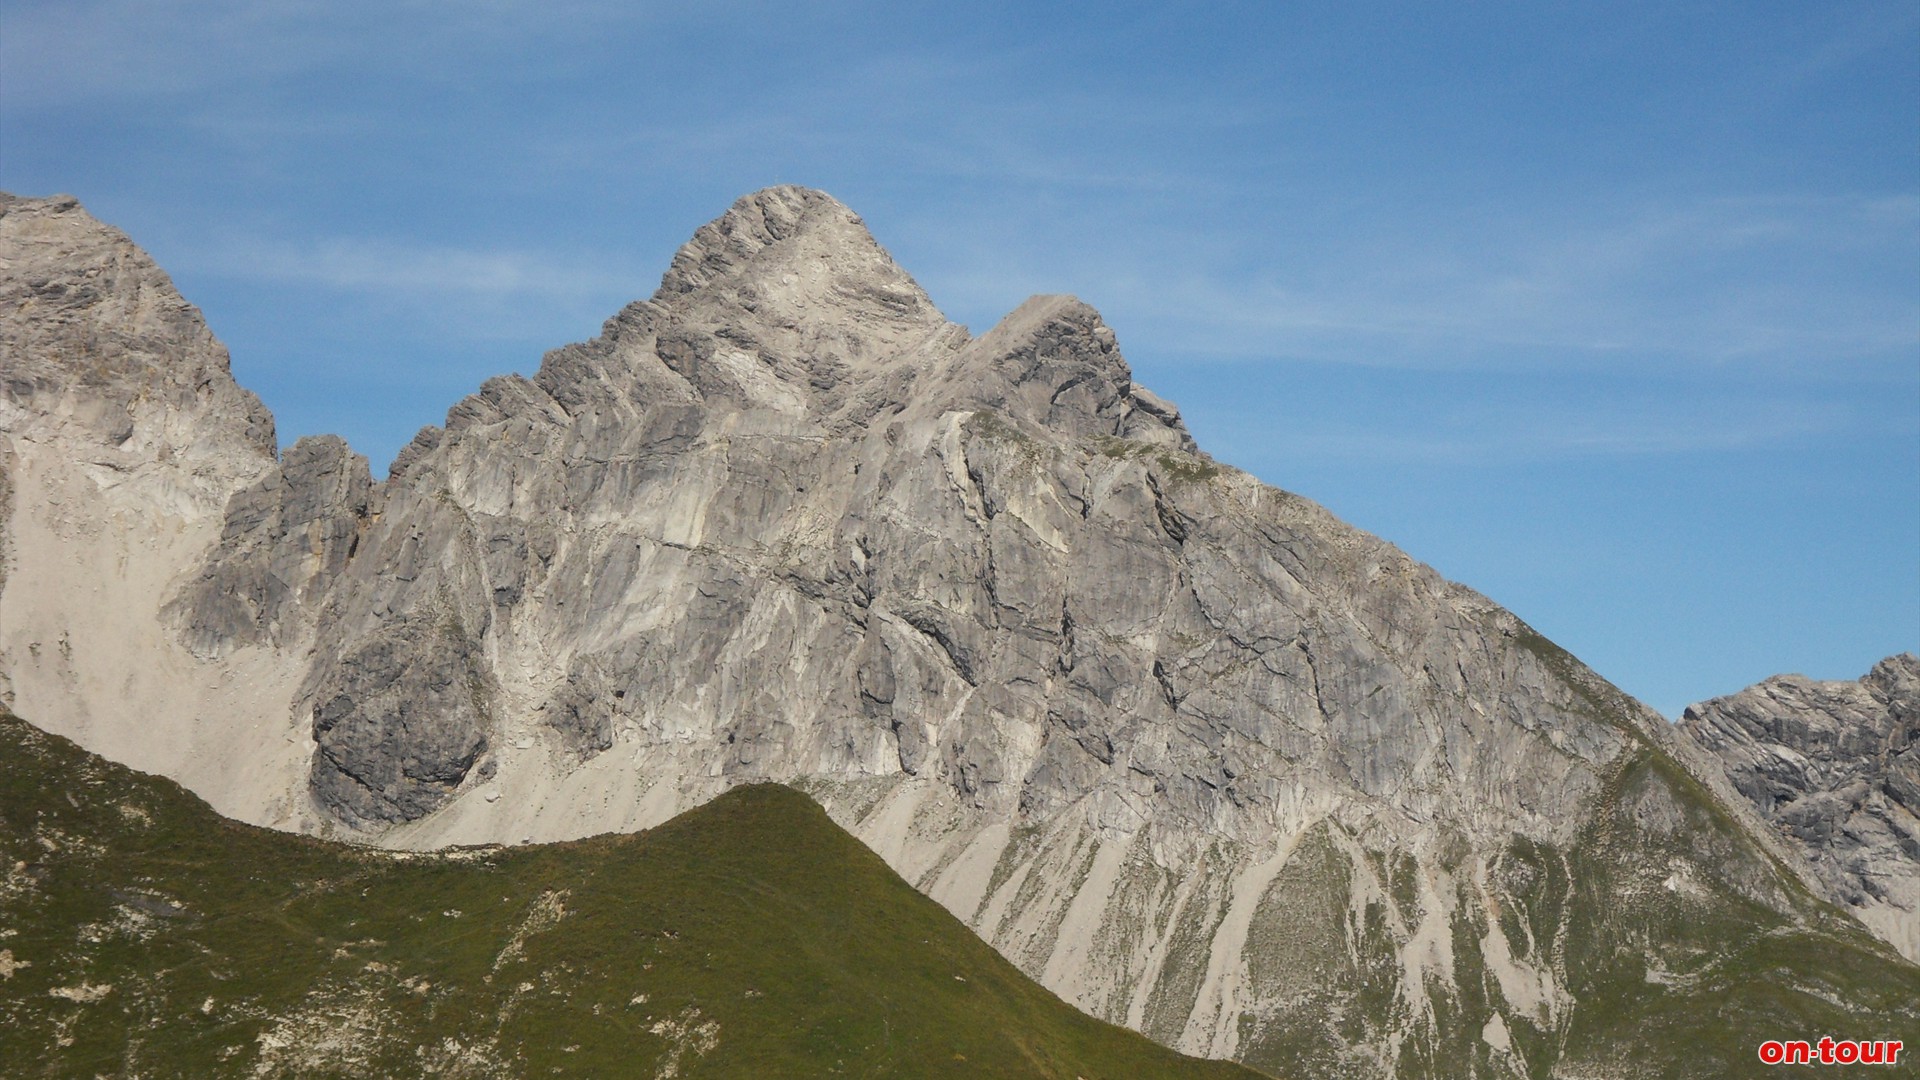 Tiefe Einblicke in die Allguer Alpen mit dem Groen Krottenkopf, dem hchsten Berg der Gebirgsgruppe.